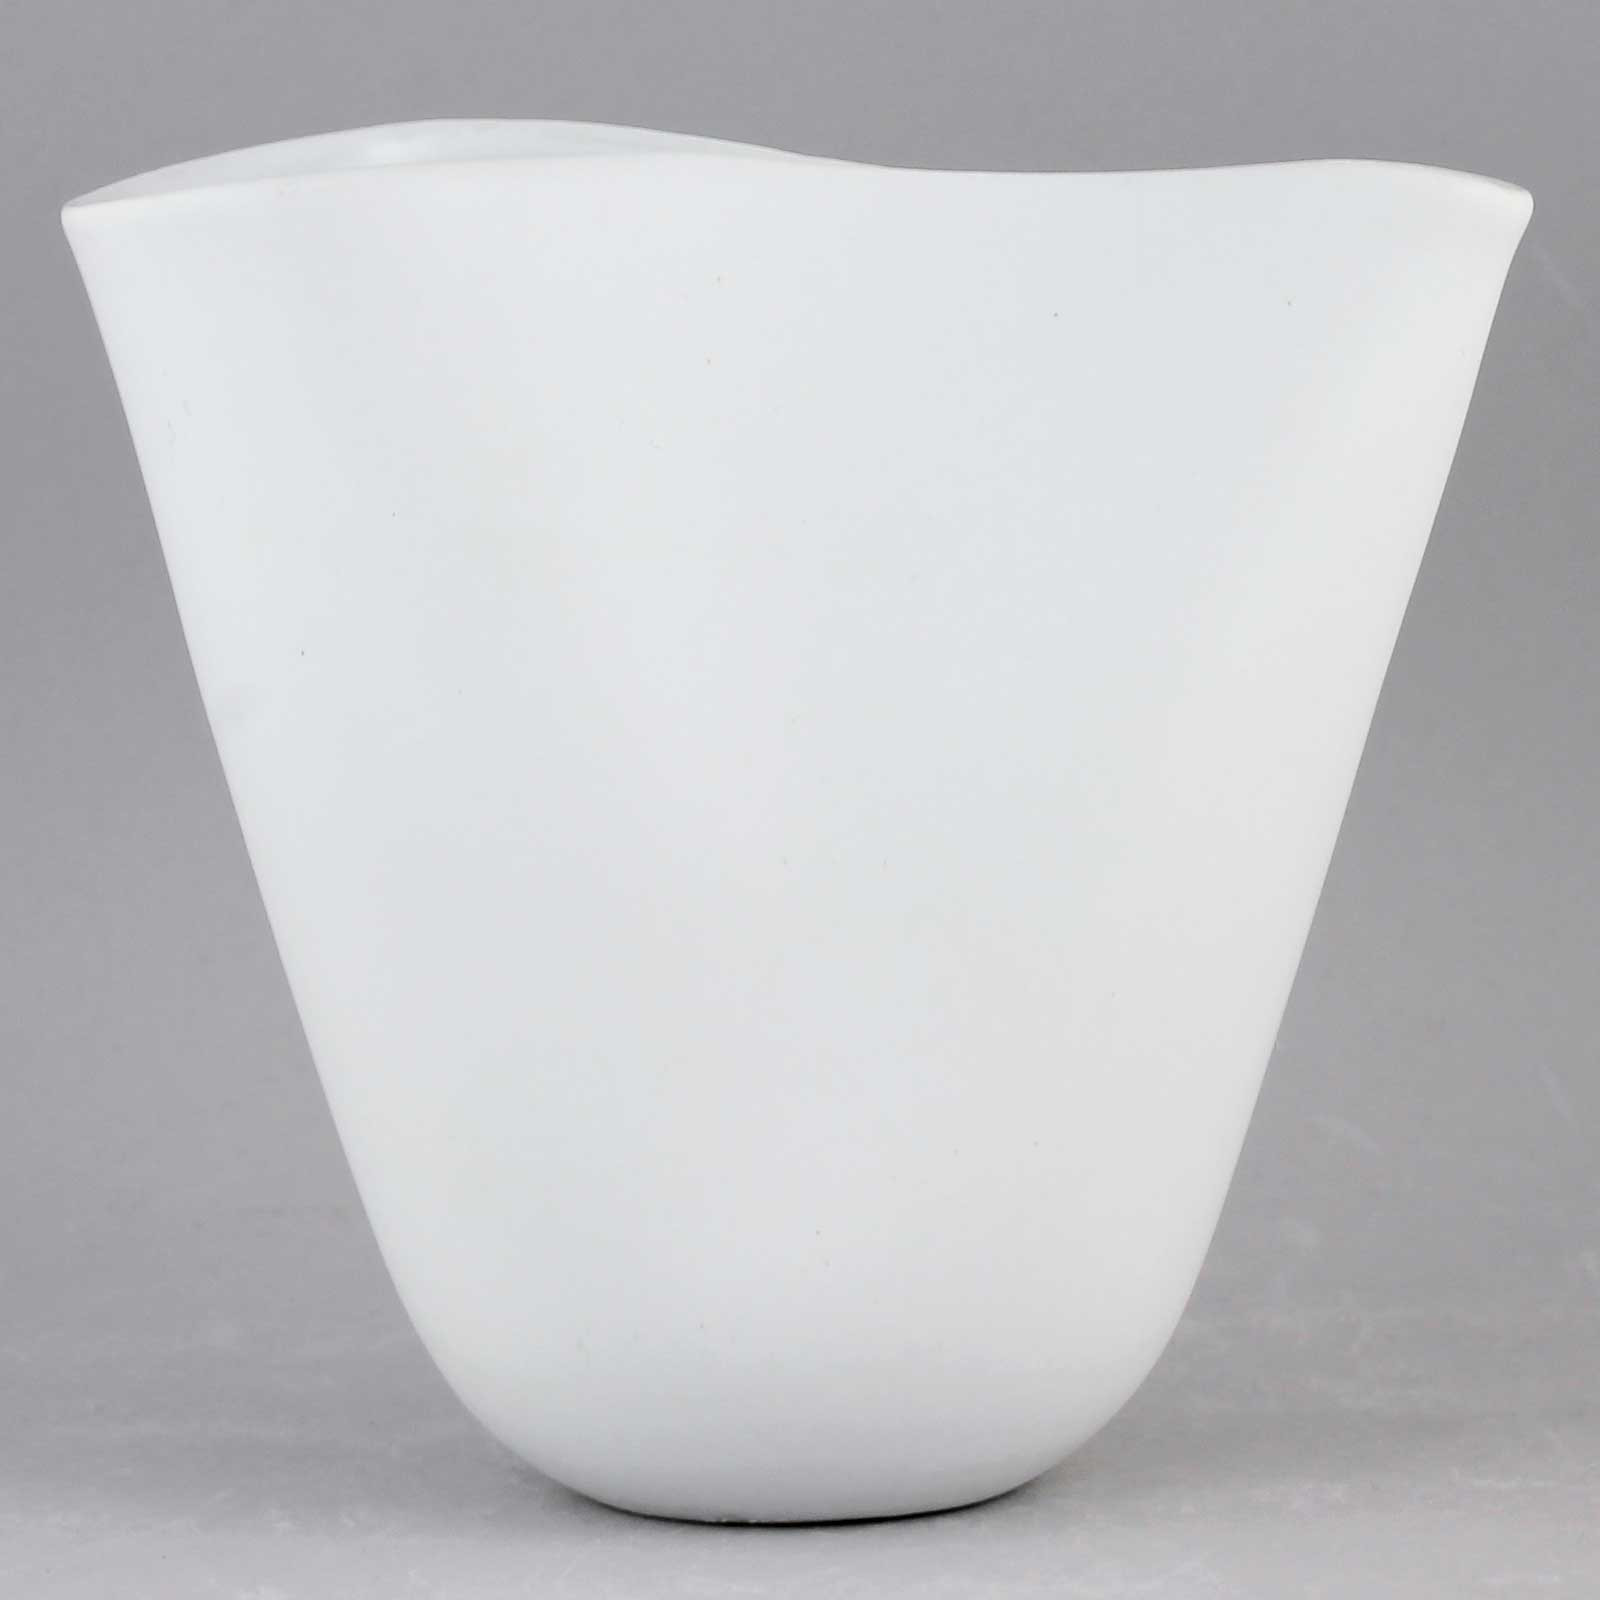 18 Lovable 12 Inch Ceramic Vase 2024 free download 12 inch ceramic vase of stig lindberg veckla 1950 streamlined white vase 12 cm 2 for 159859715 origpic 92f928